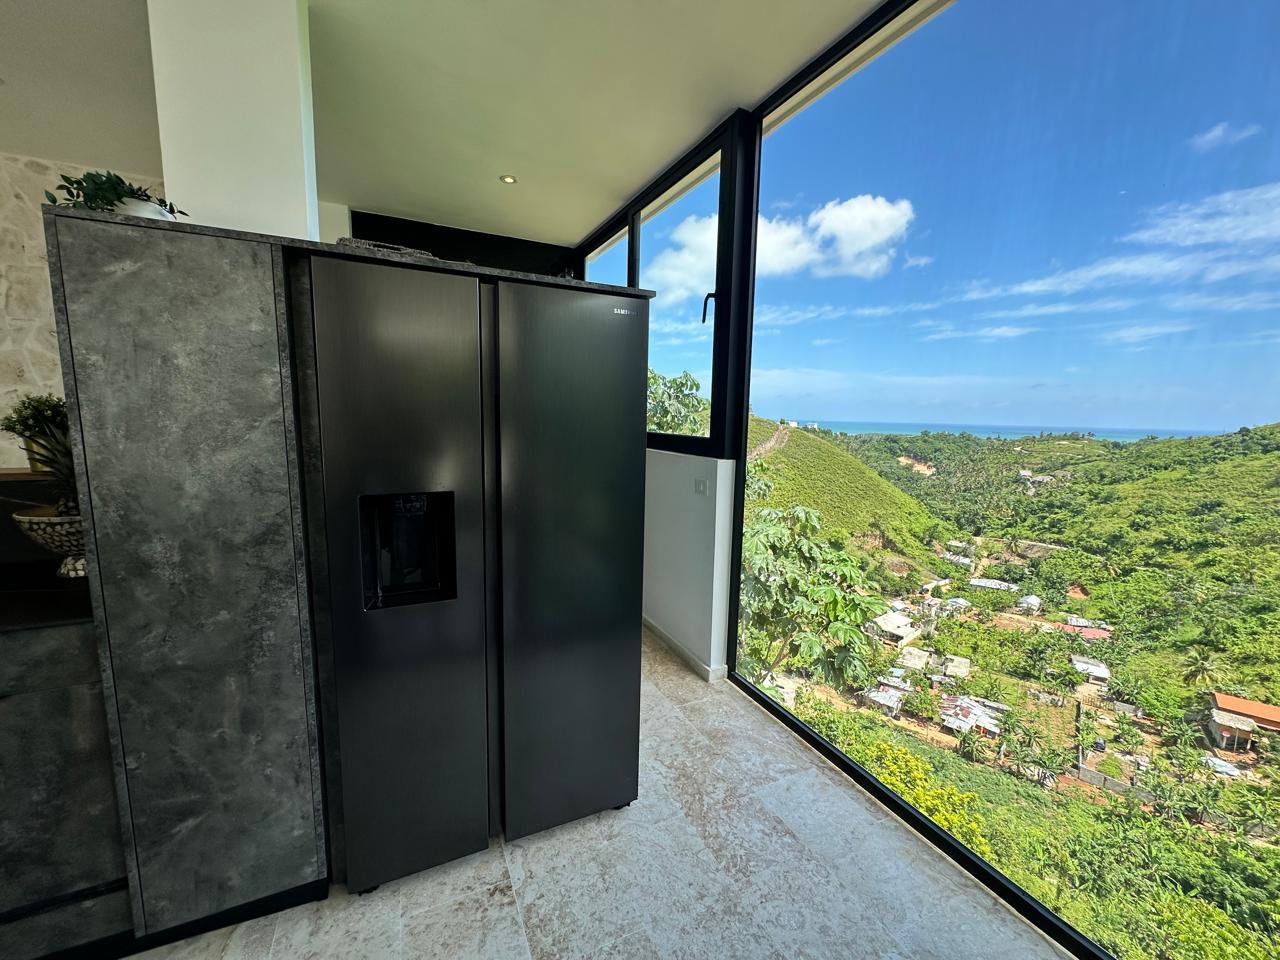 Splendid 4-bedroom villa with ocean vista - Las Terrenas Real Estate - Ocean Edge Dominican Republic (21)